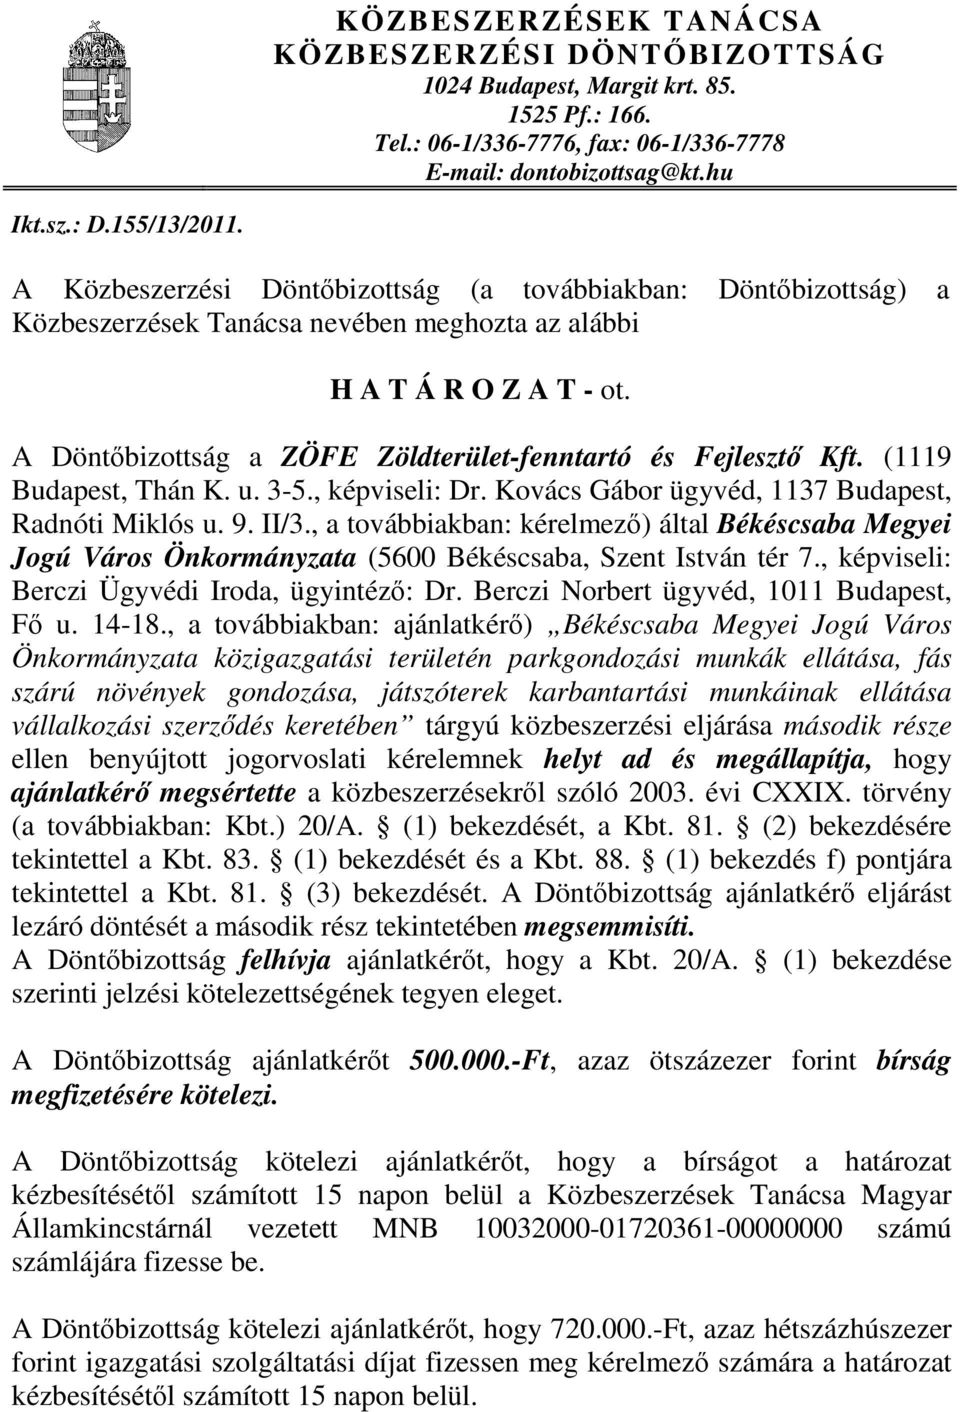 A Döntőbizottság a ZÖFE Zöldterület-fenntartó és Fejlesztő Kft. (1119 Budapest, Thán K. u. 3-5., képviseli: Dr. Kovács Gábor ügyvéd, 1137 Budapest, Radnóti Miklós u. 9. II/3.